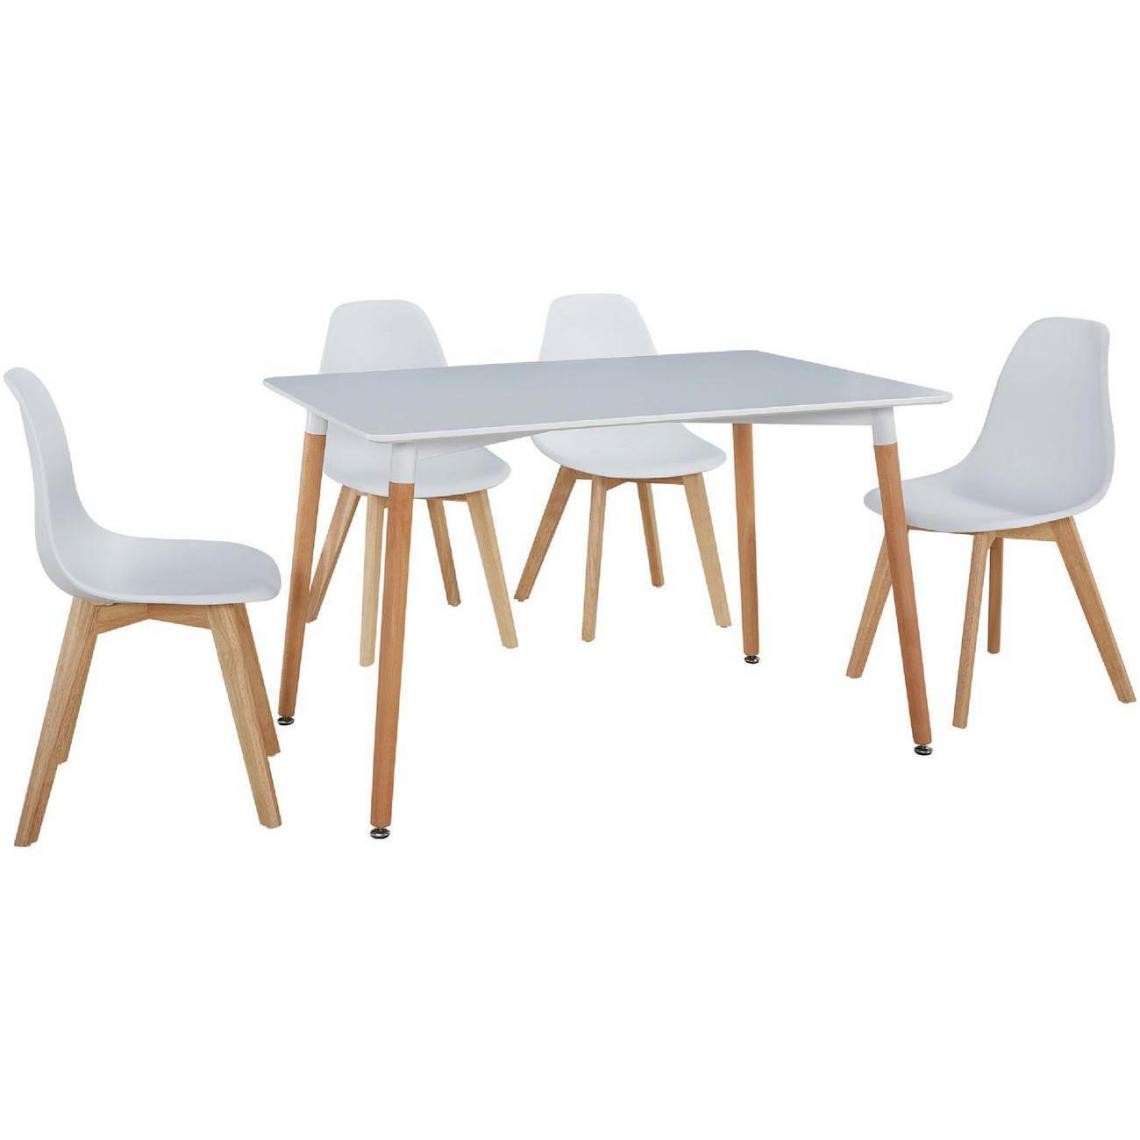 ATHM DESIGN - Ensemble table et 4 chaises Scandinave MARCO Blanc - plateau Bois 120 x 80 assise ABS pieds Bois - Tables à manger